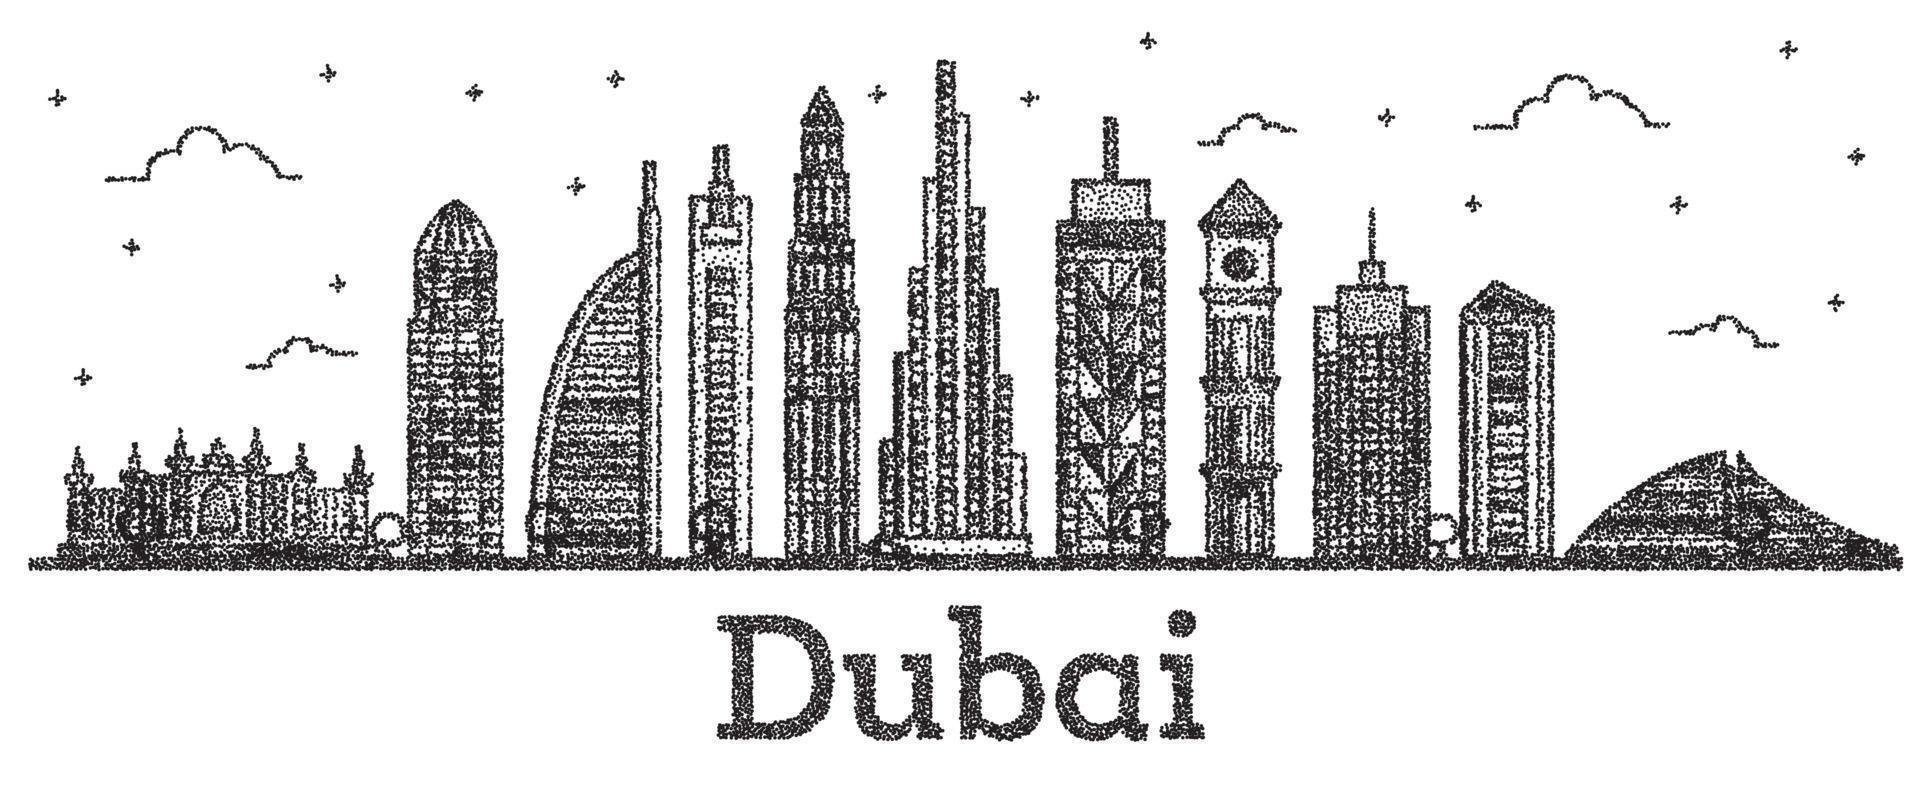 skyline da cidade de dubai emirados árabes unidos gravada com edifícios modernos isolados no branco. vetor